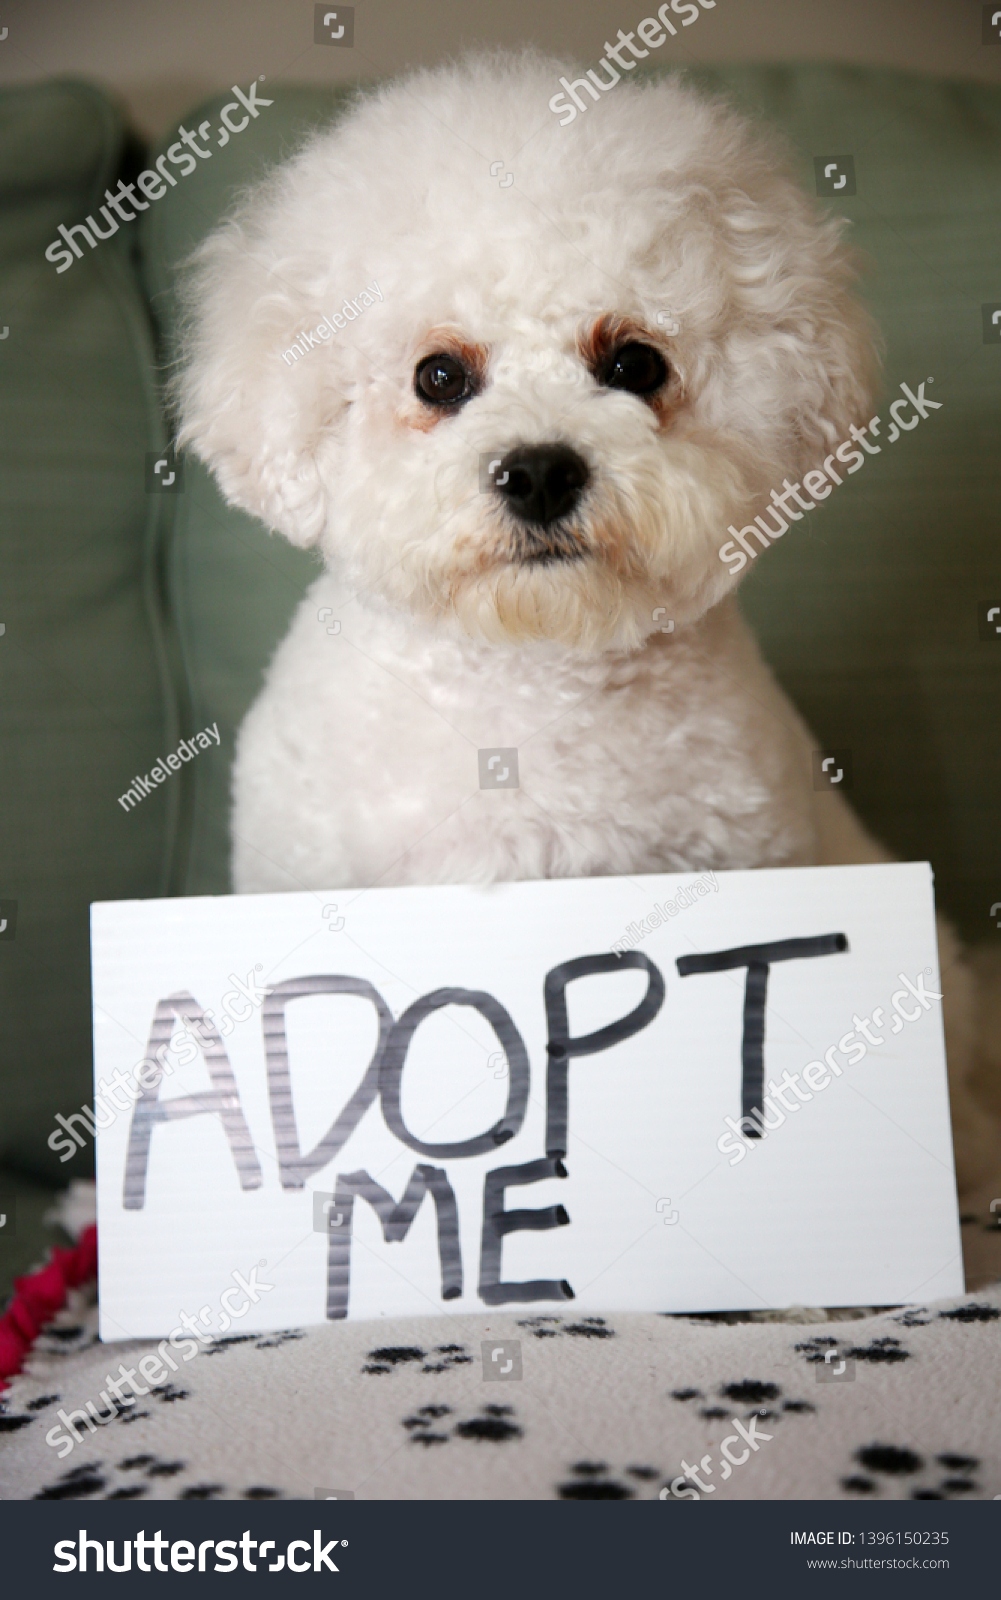 Pet Adoption Concept Bichon Frise Dog Stock Photo Edit Now 1396150235